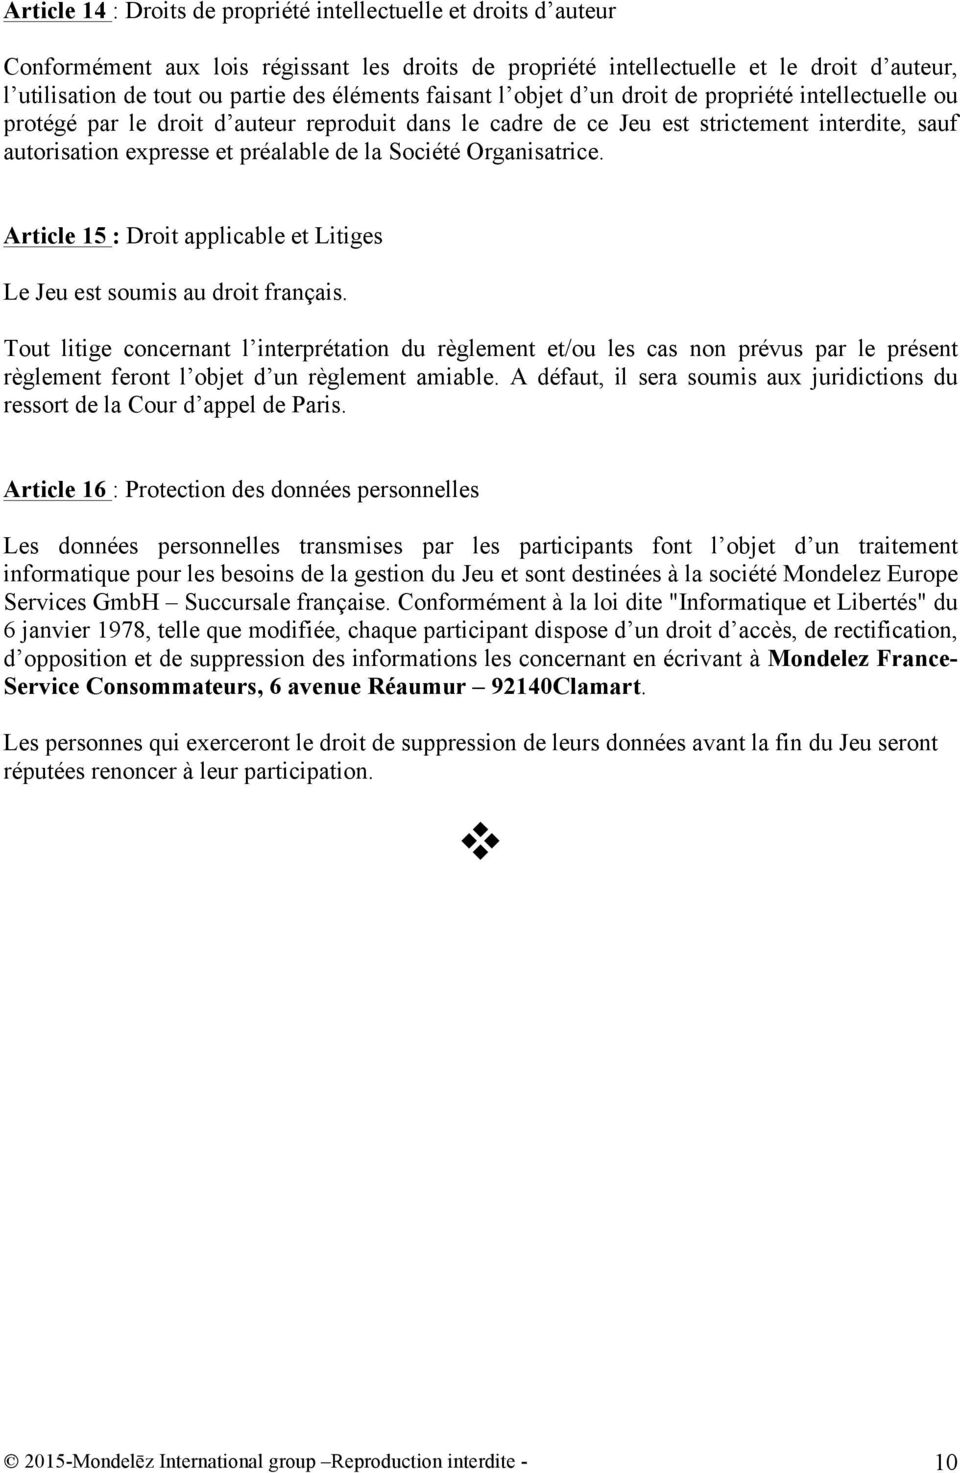 de la Société Organisatrice. Article 15 : Droit applicable et Litiges Le Jeu est soumis au droit français.